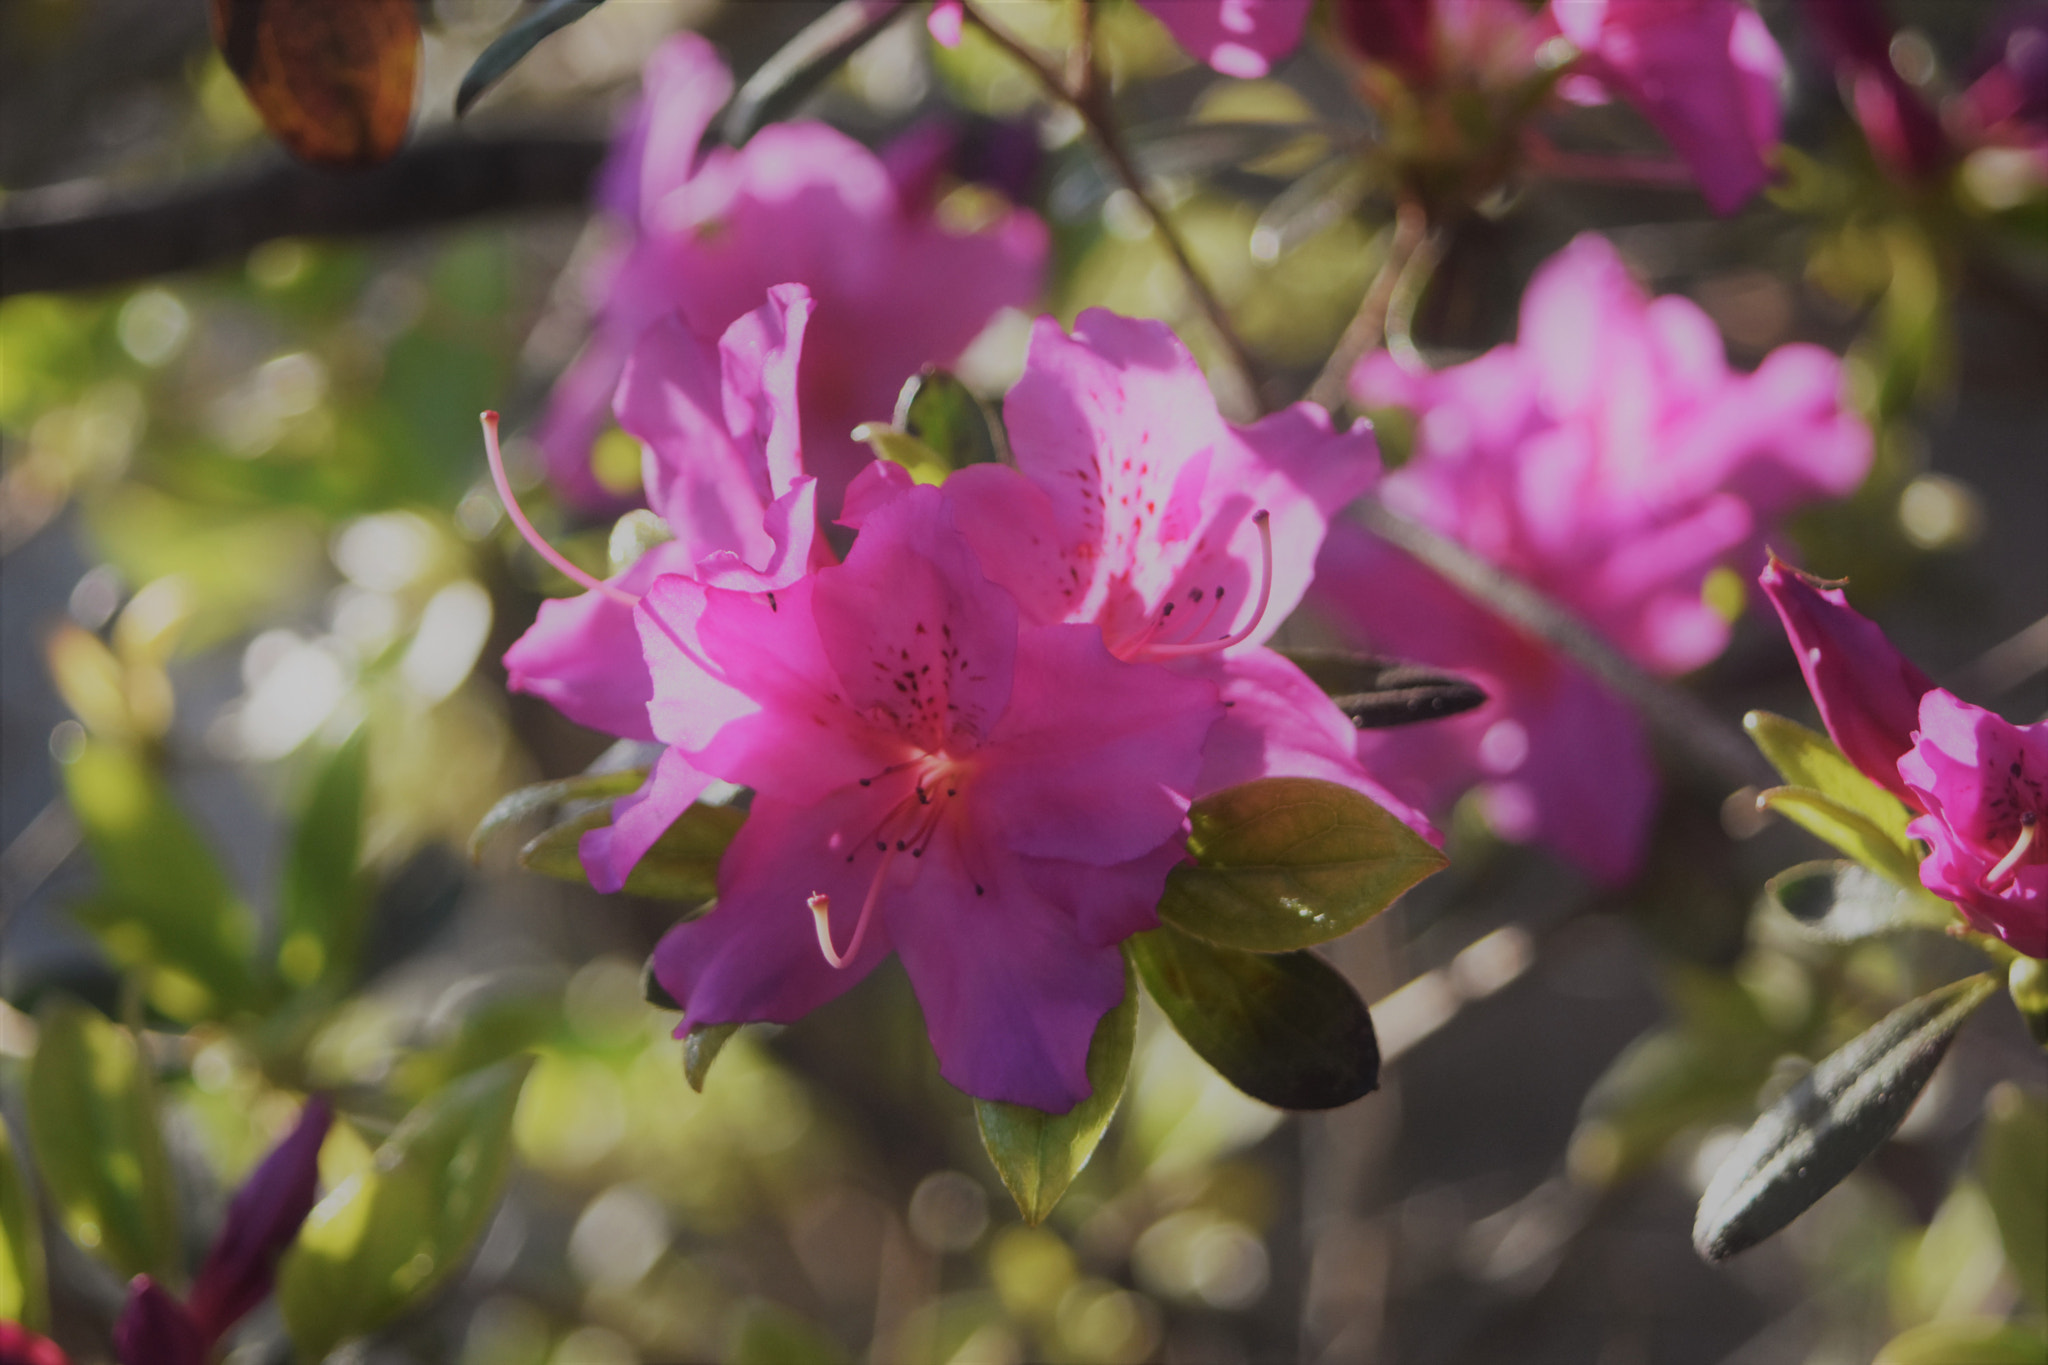 AF Zoom-Nikkor 28-80mm f/3.5-5.6D sample photo. Pink flowers photography